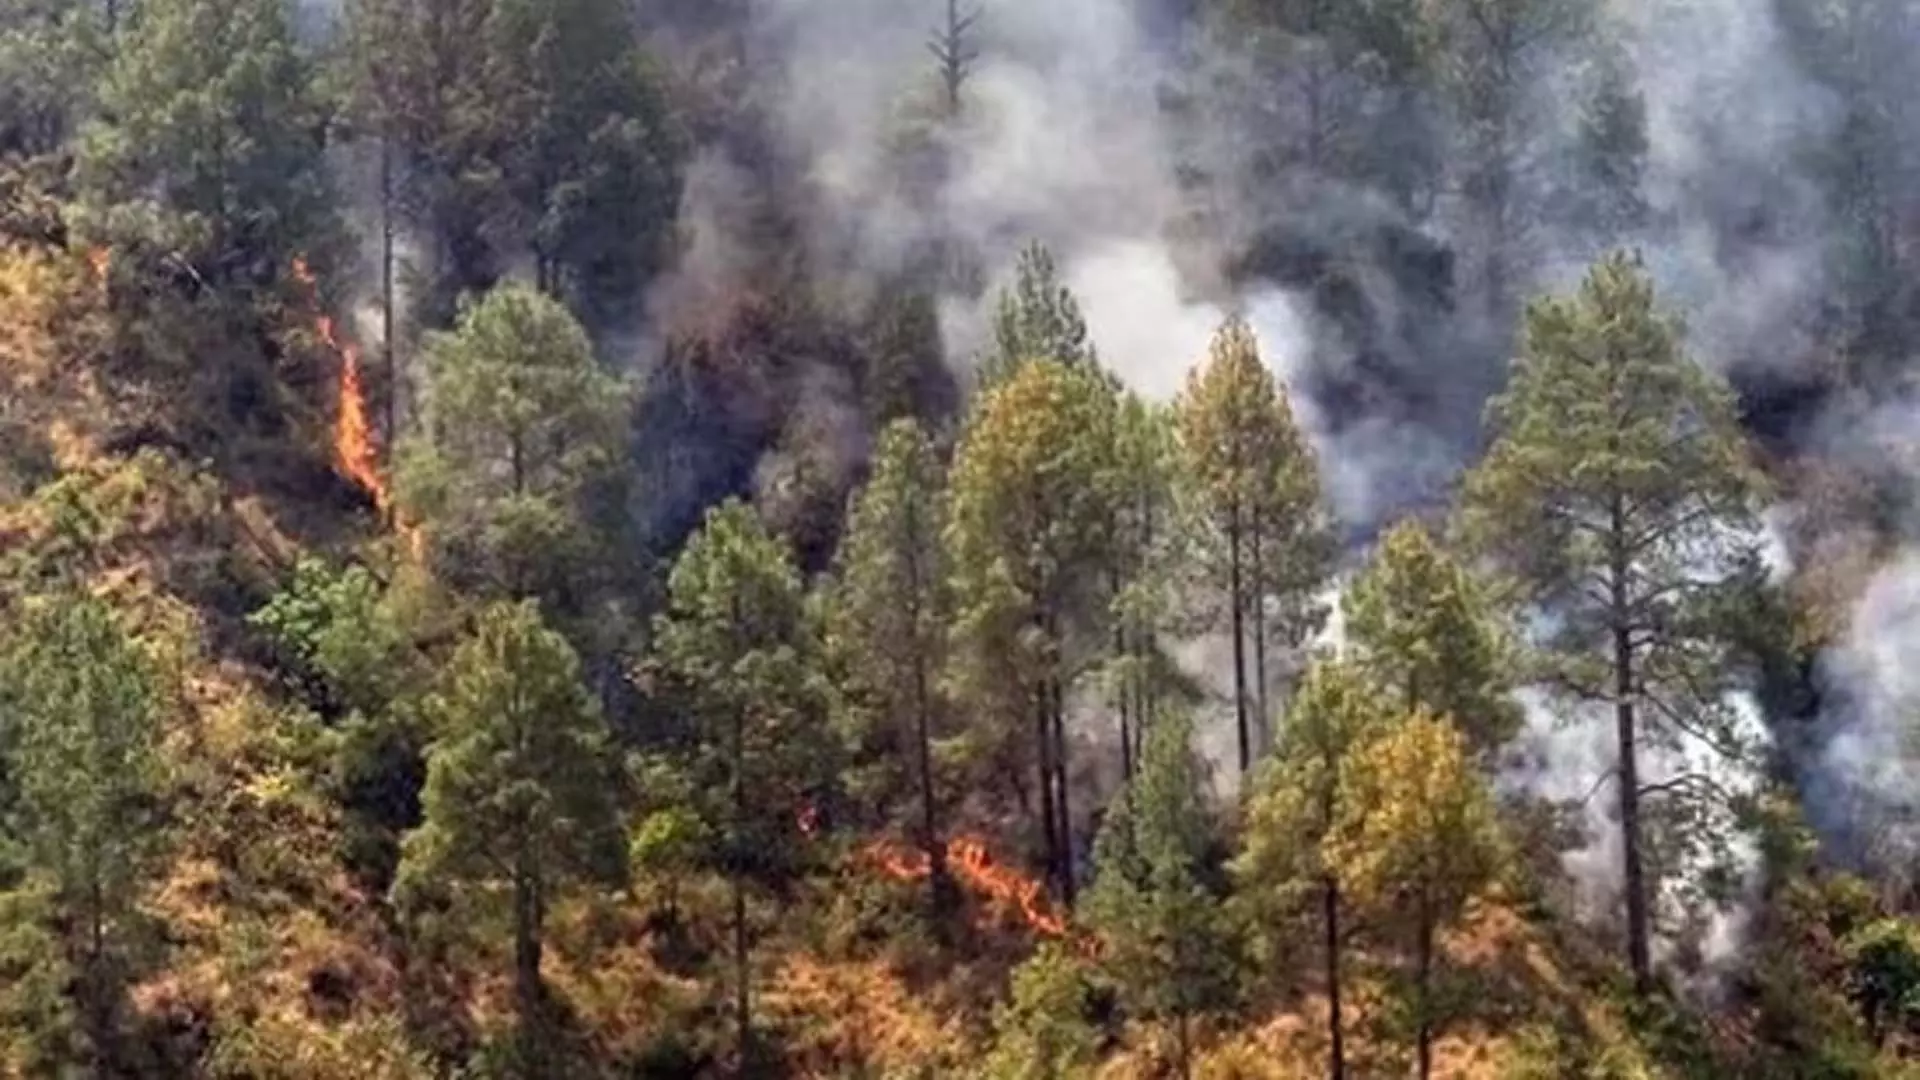 नैनीताल के जंगल की आग से नागरिक क्षेत्र को खतरा